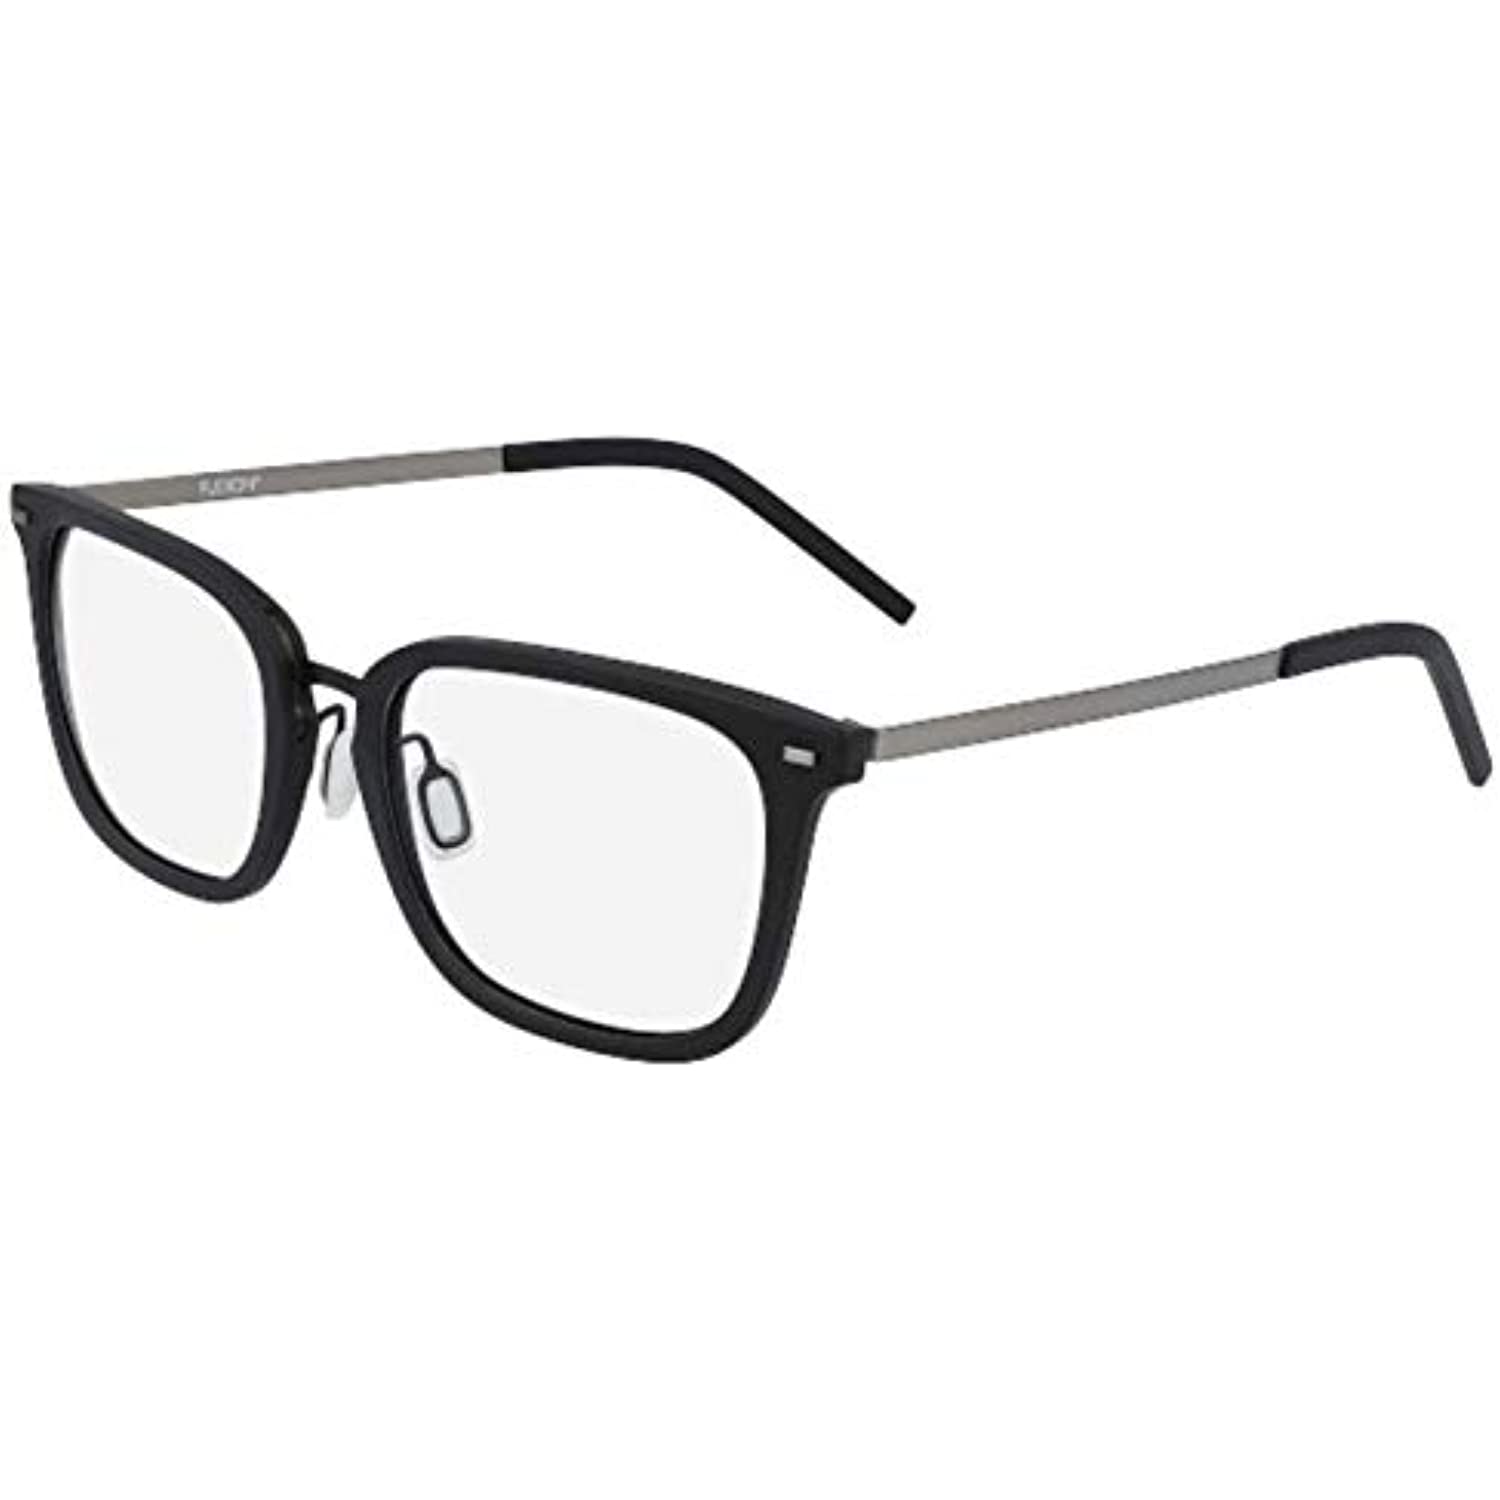 NEW FLEXON B2020 001 Black FLEXIBLE TITANIUM Eyeglasses 55mm with